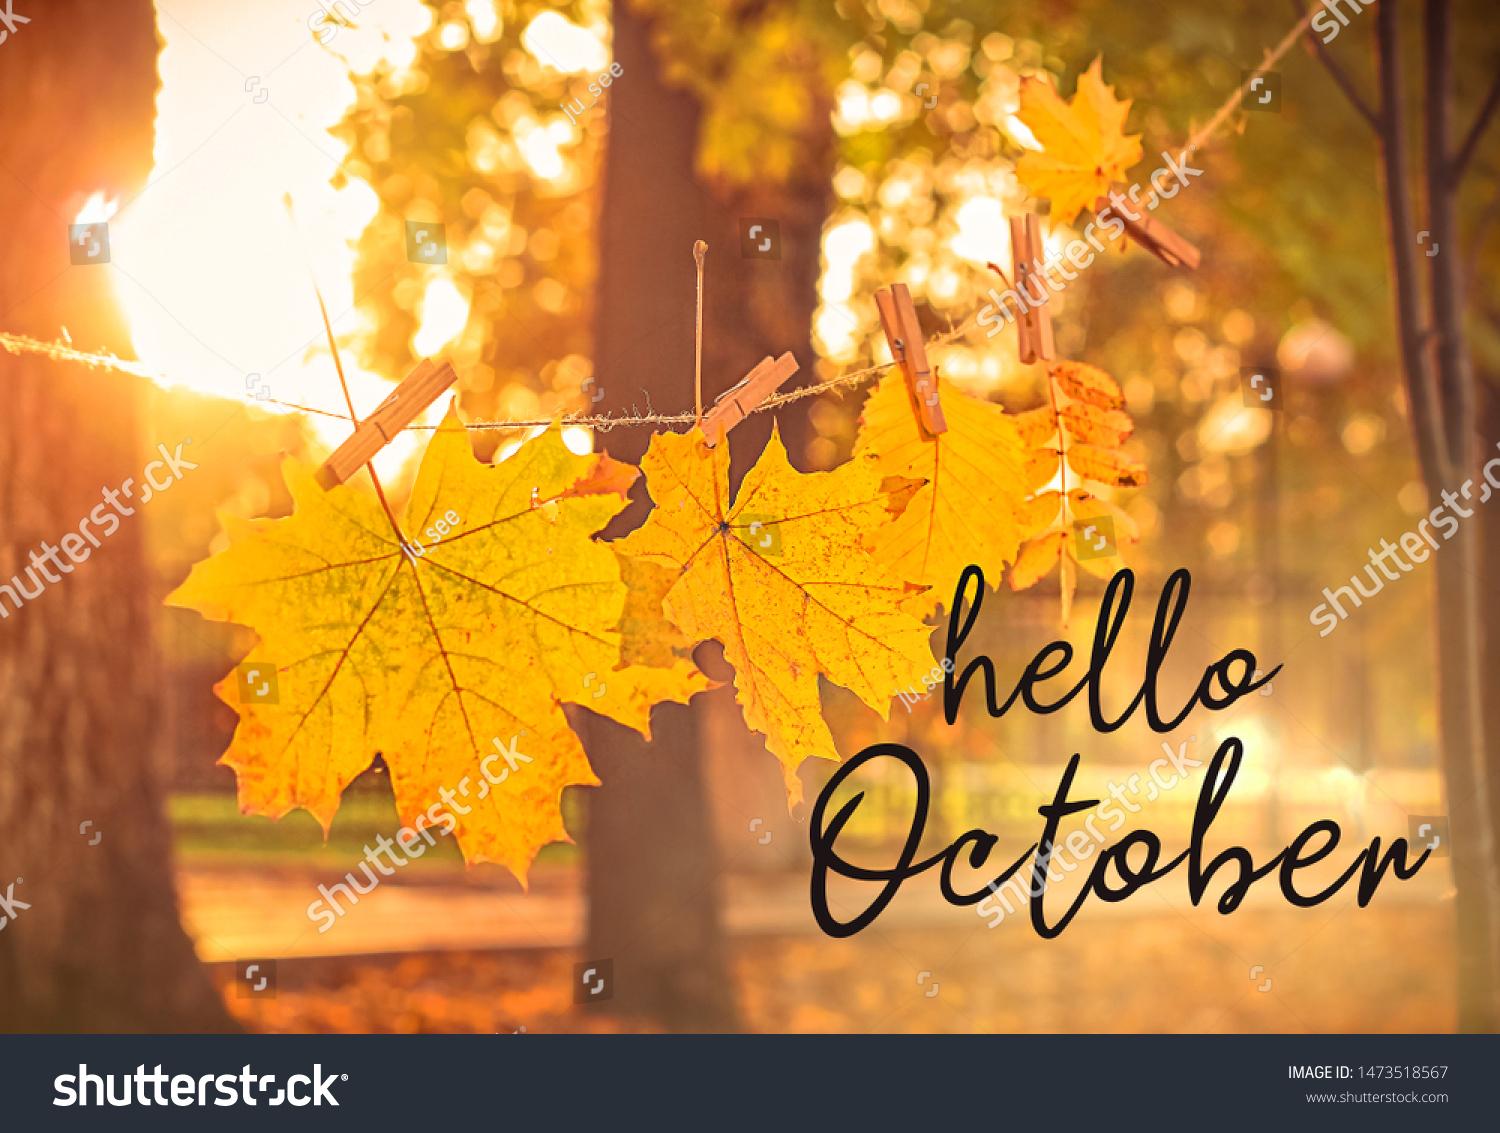 48951 Hello October Images Stock Photos Vectors Shutterstock